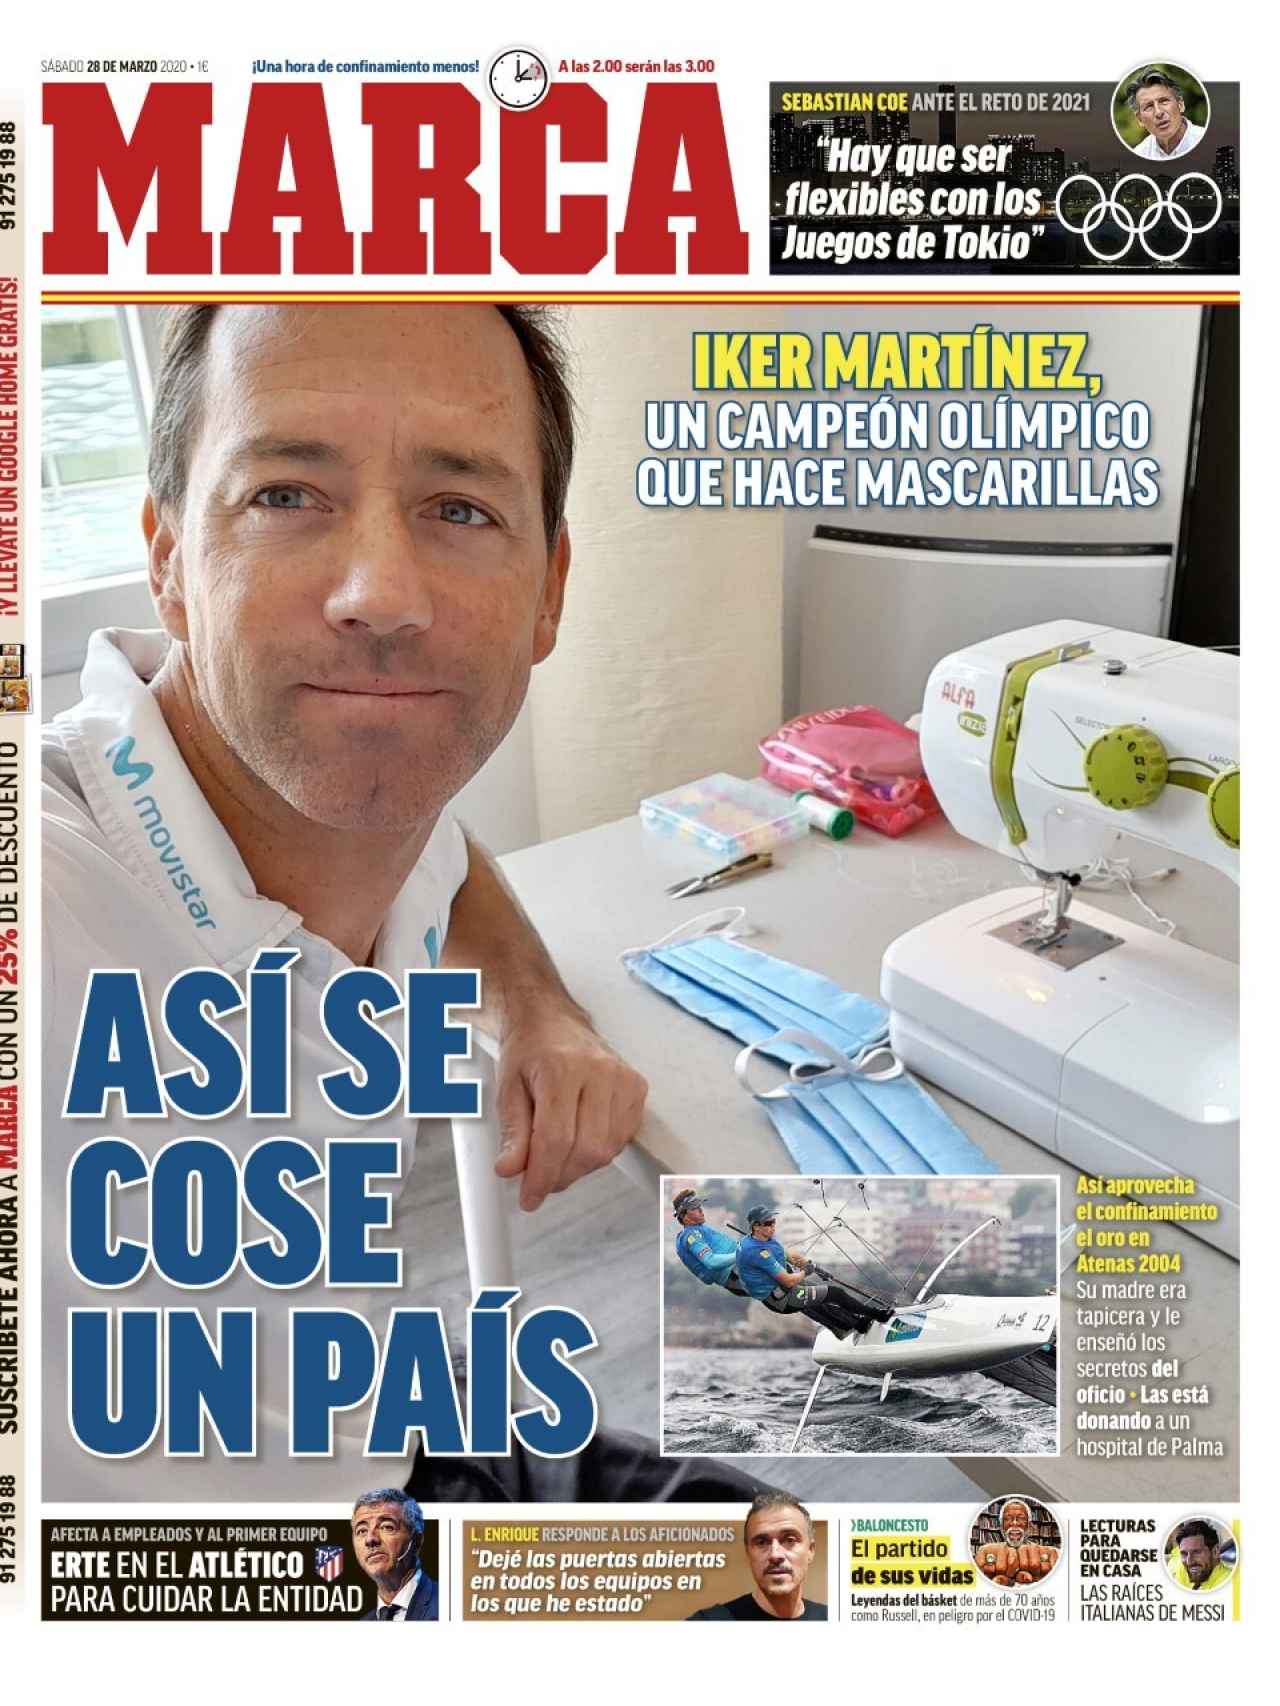 La portada del diario MARCA (28/03/2020)